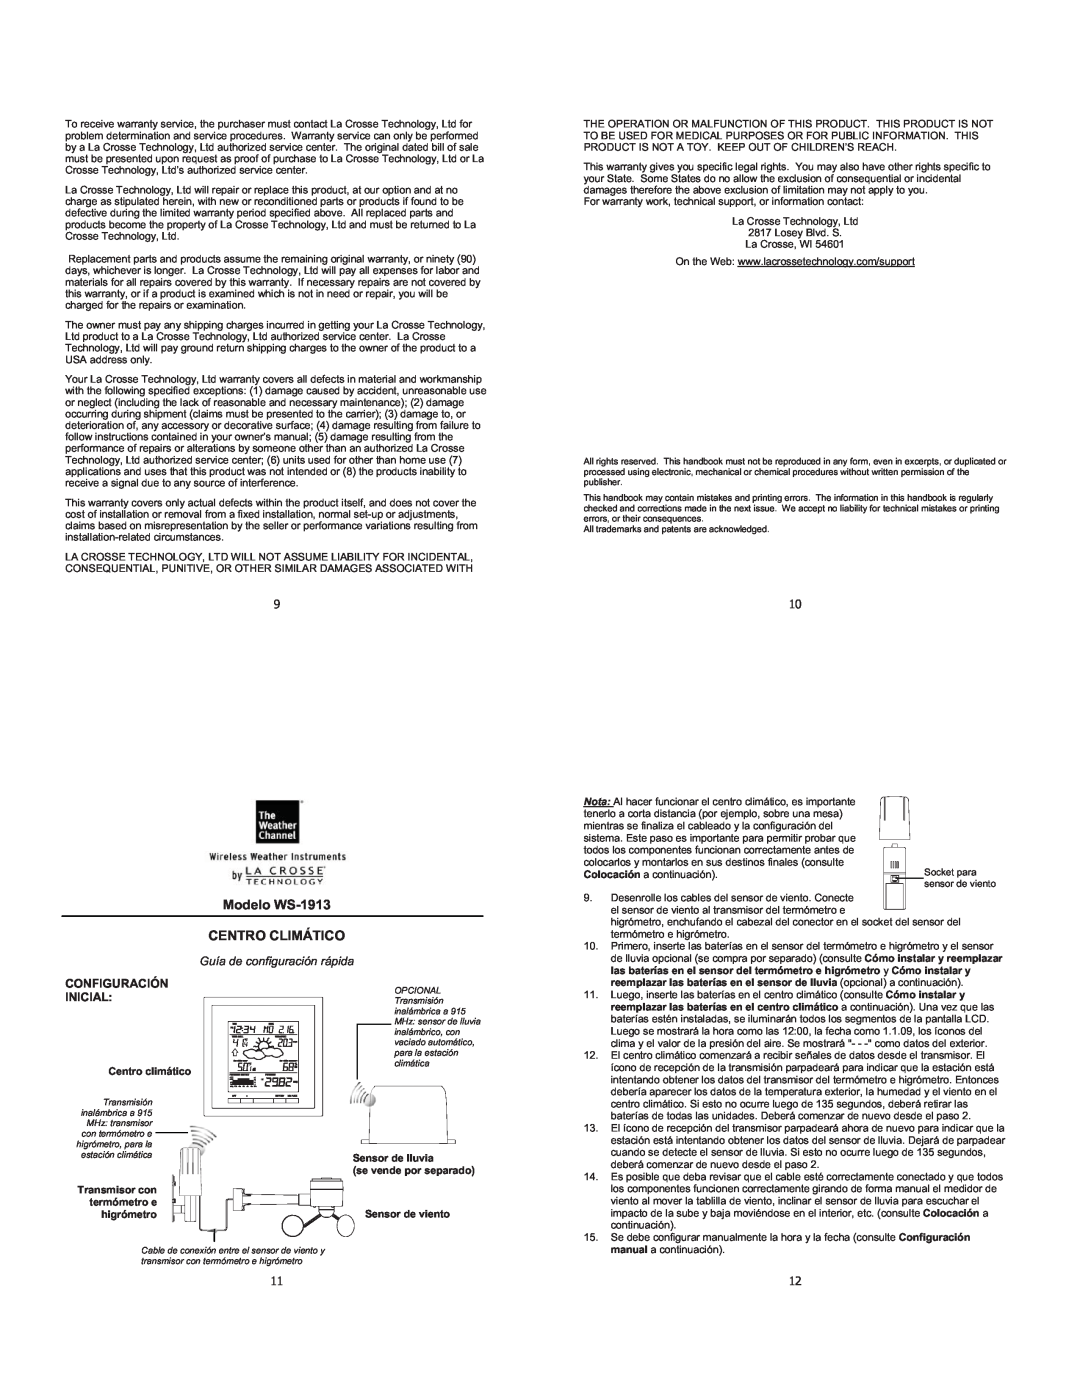 La Crosse Technology setup guide Modelo WS-1913 CENTRO CLIMÁTICO, Guía de configuración rápida, Configuración Inicial 